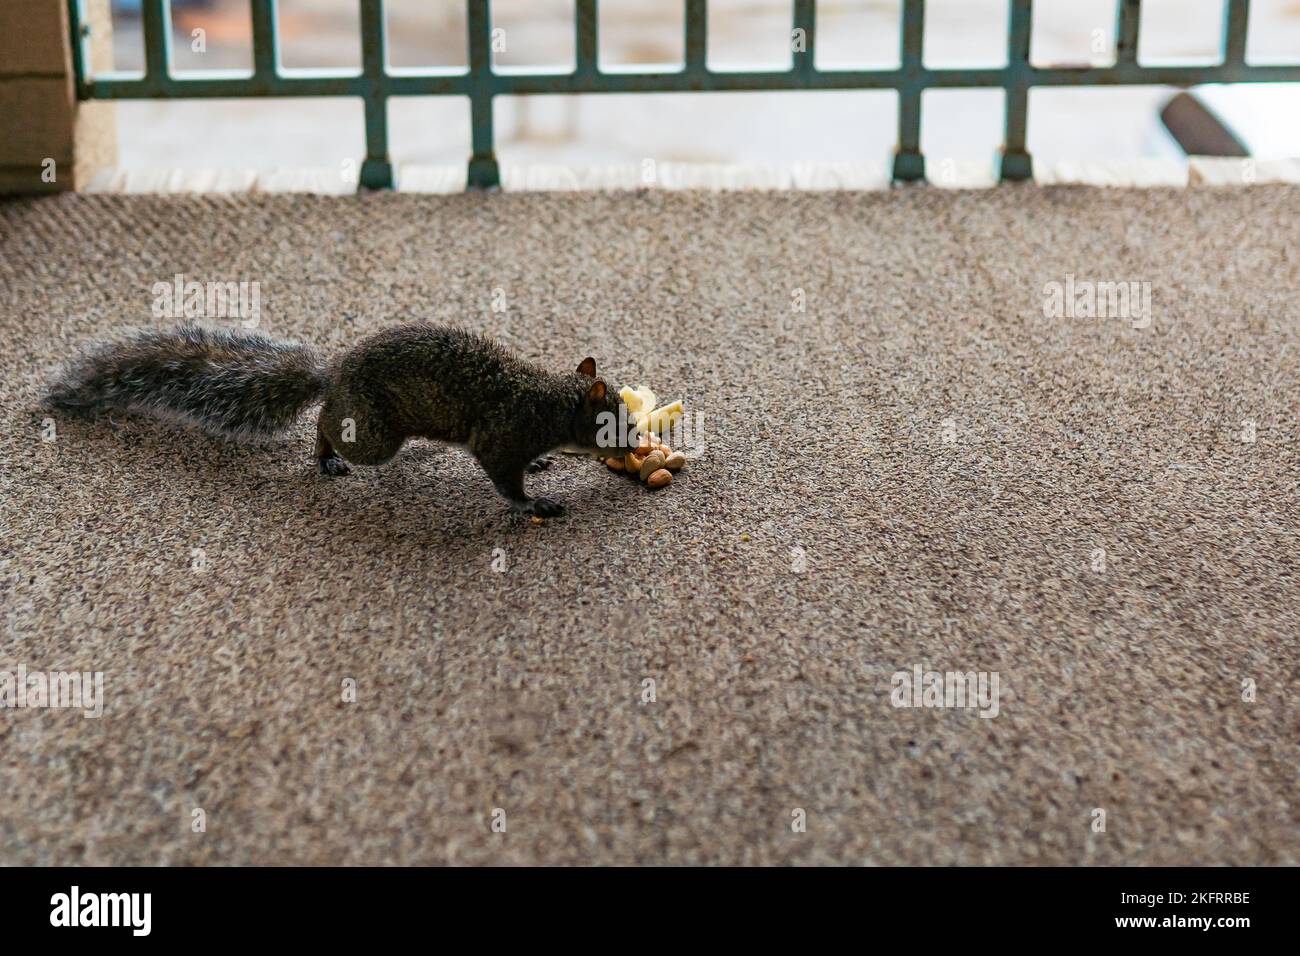 Eichhörnchen essen Nüsse. Haselnuss, Erdnuss, Cashew, Mandel. Wildtiere in der städtischen Umgebung. Stockfoto